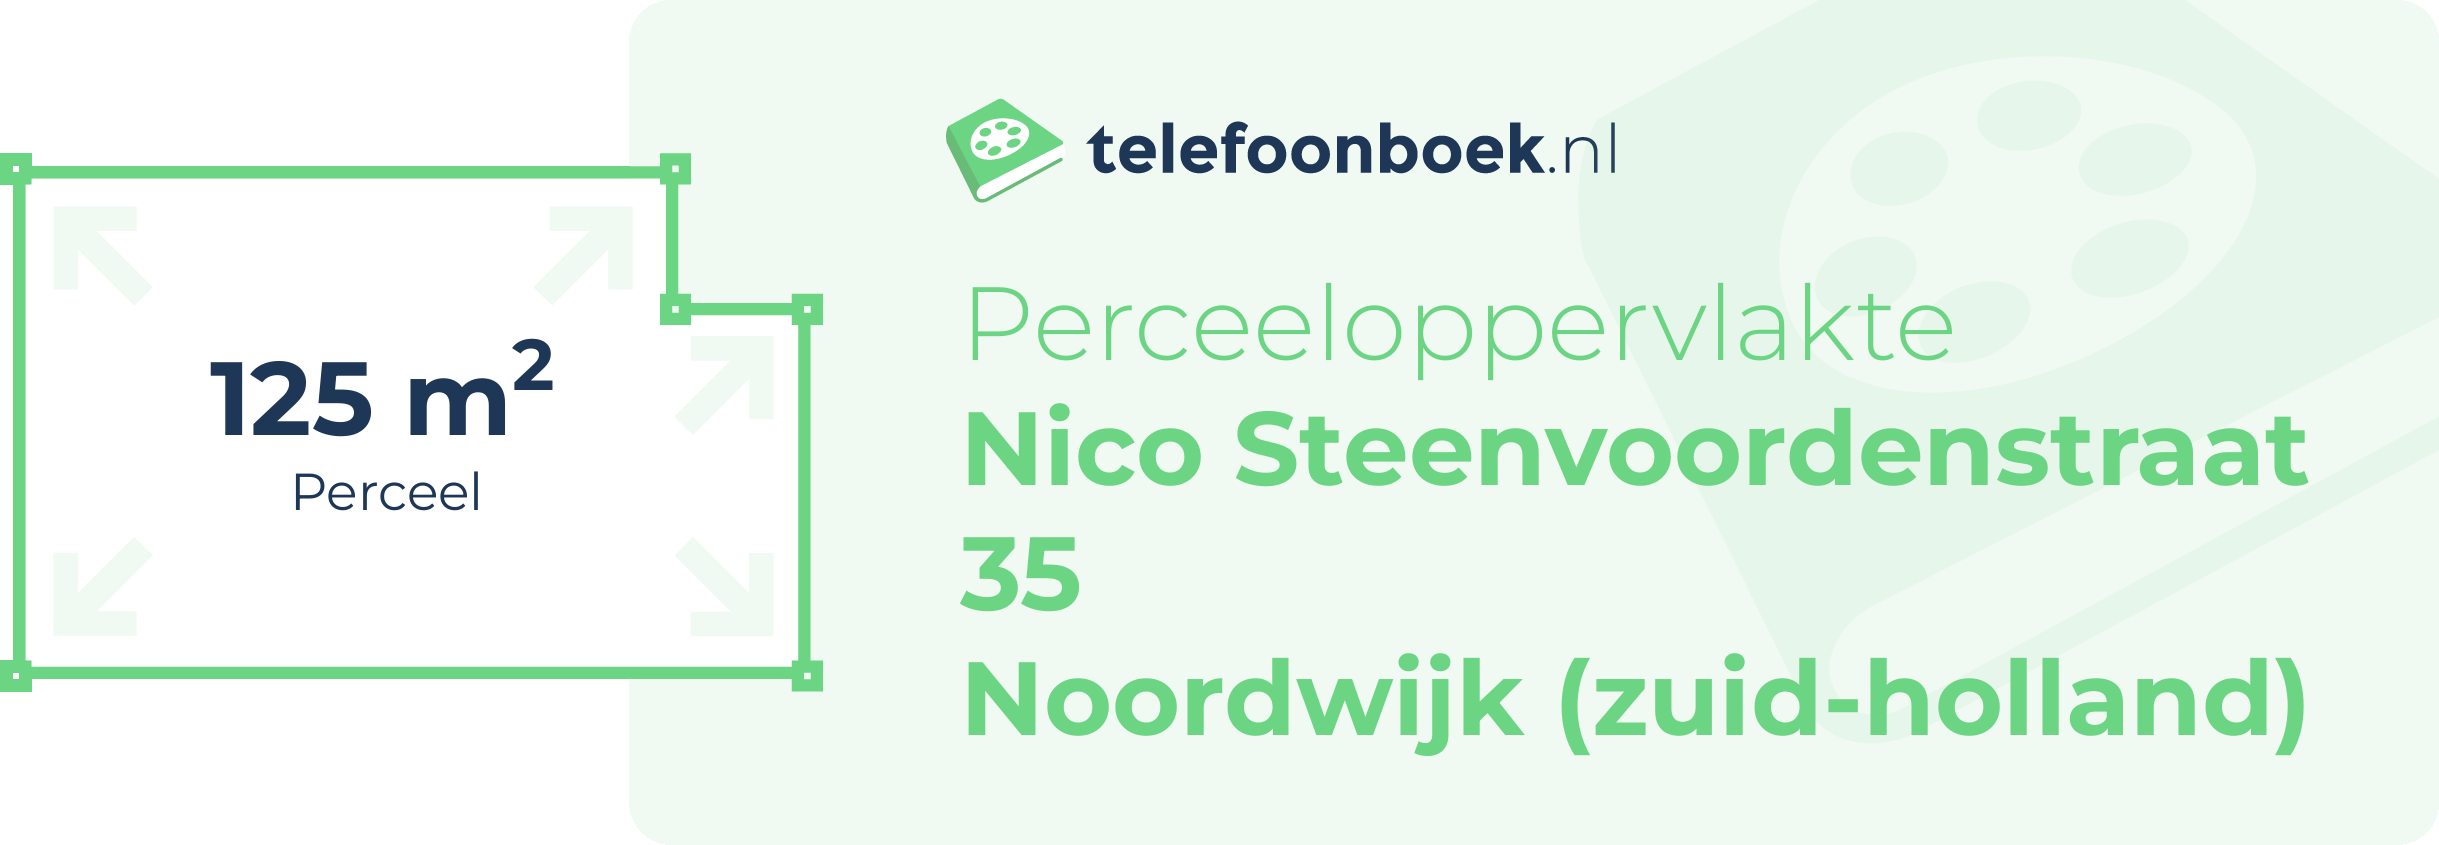 Perceeloppervlakte Nico Steenvoordenstraat 35 Noordwijk (Zuid-Holland)